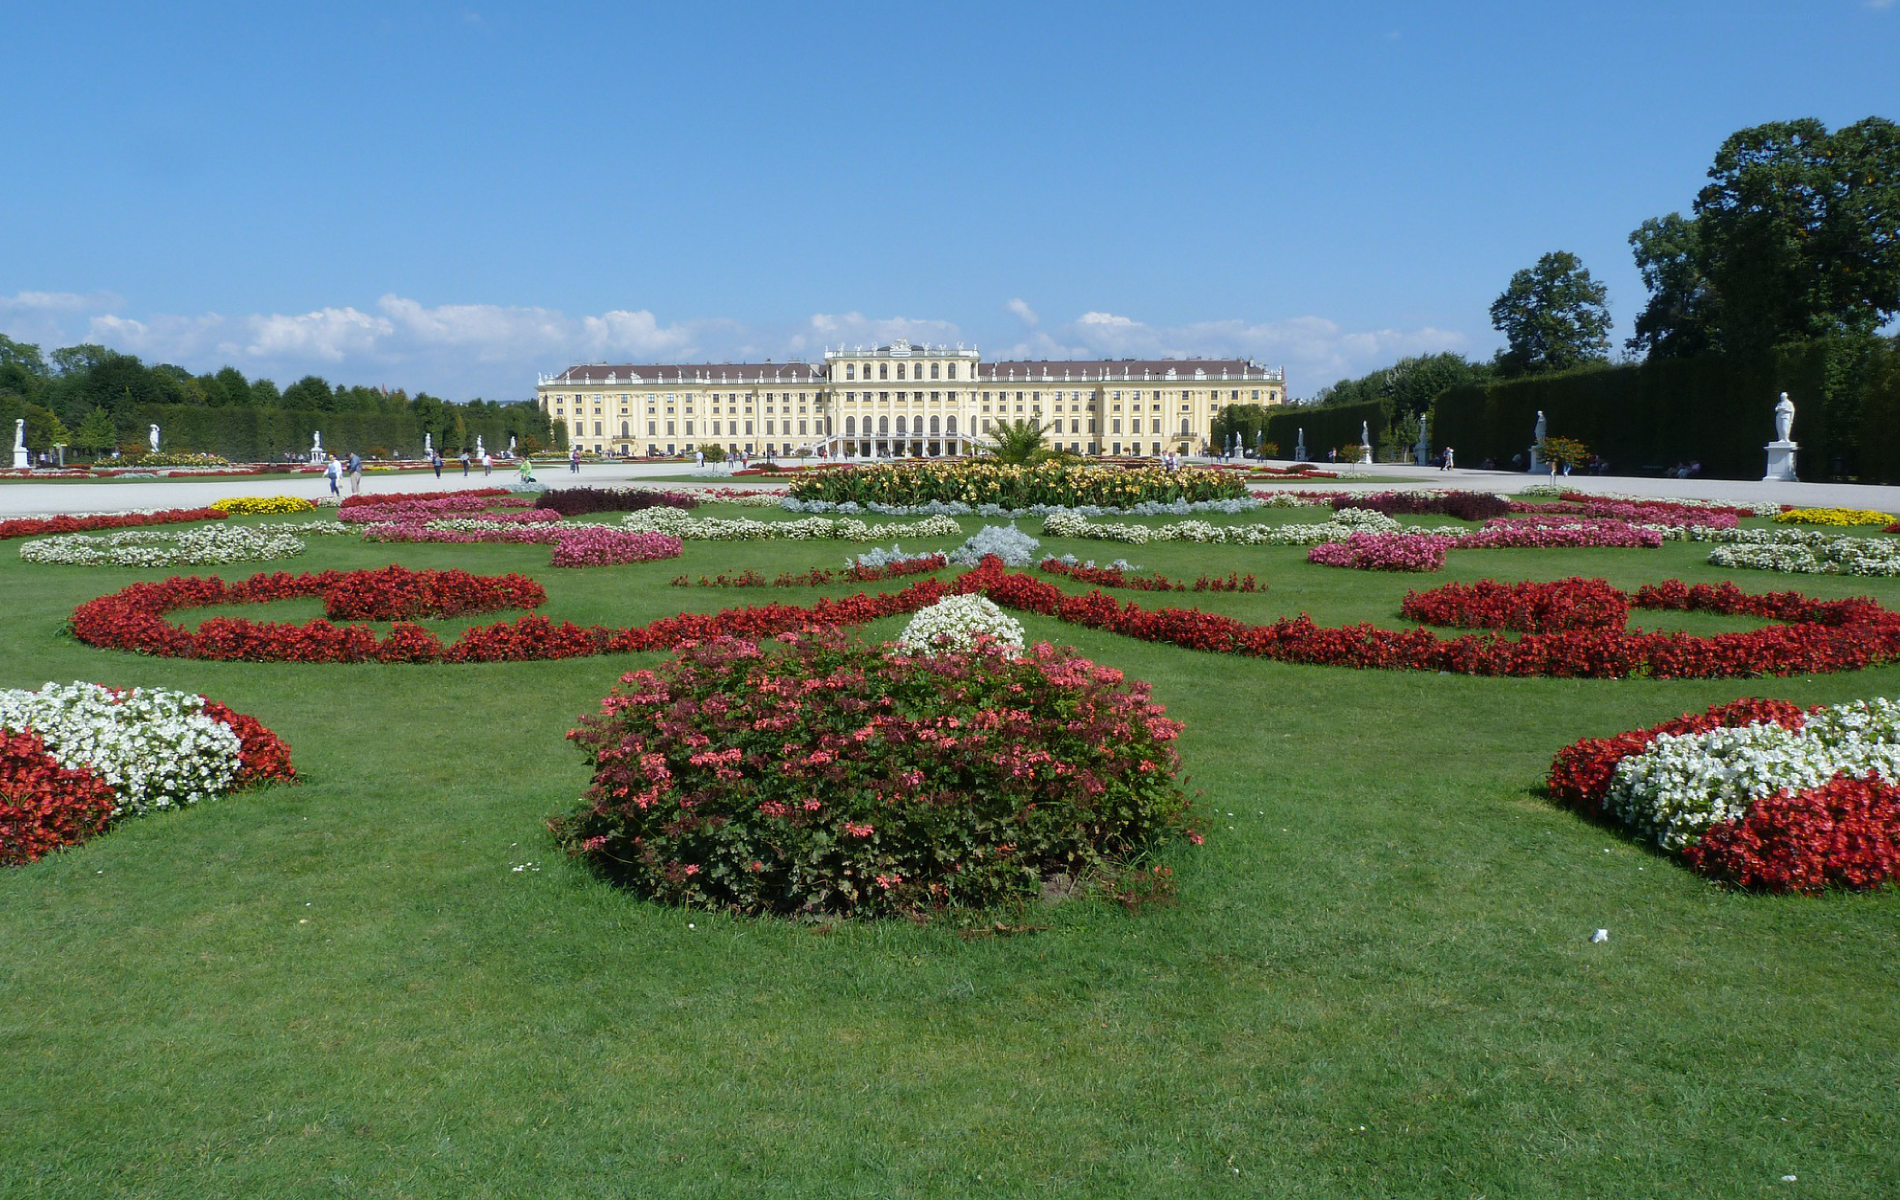 Schönbrunn Palace and Gardens